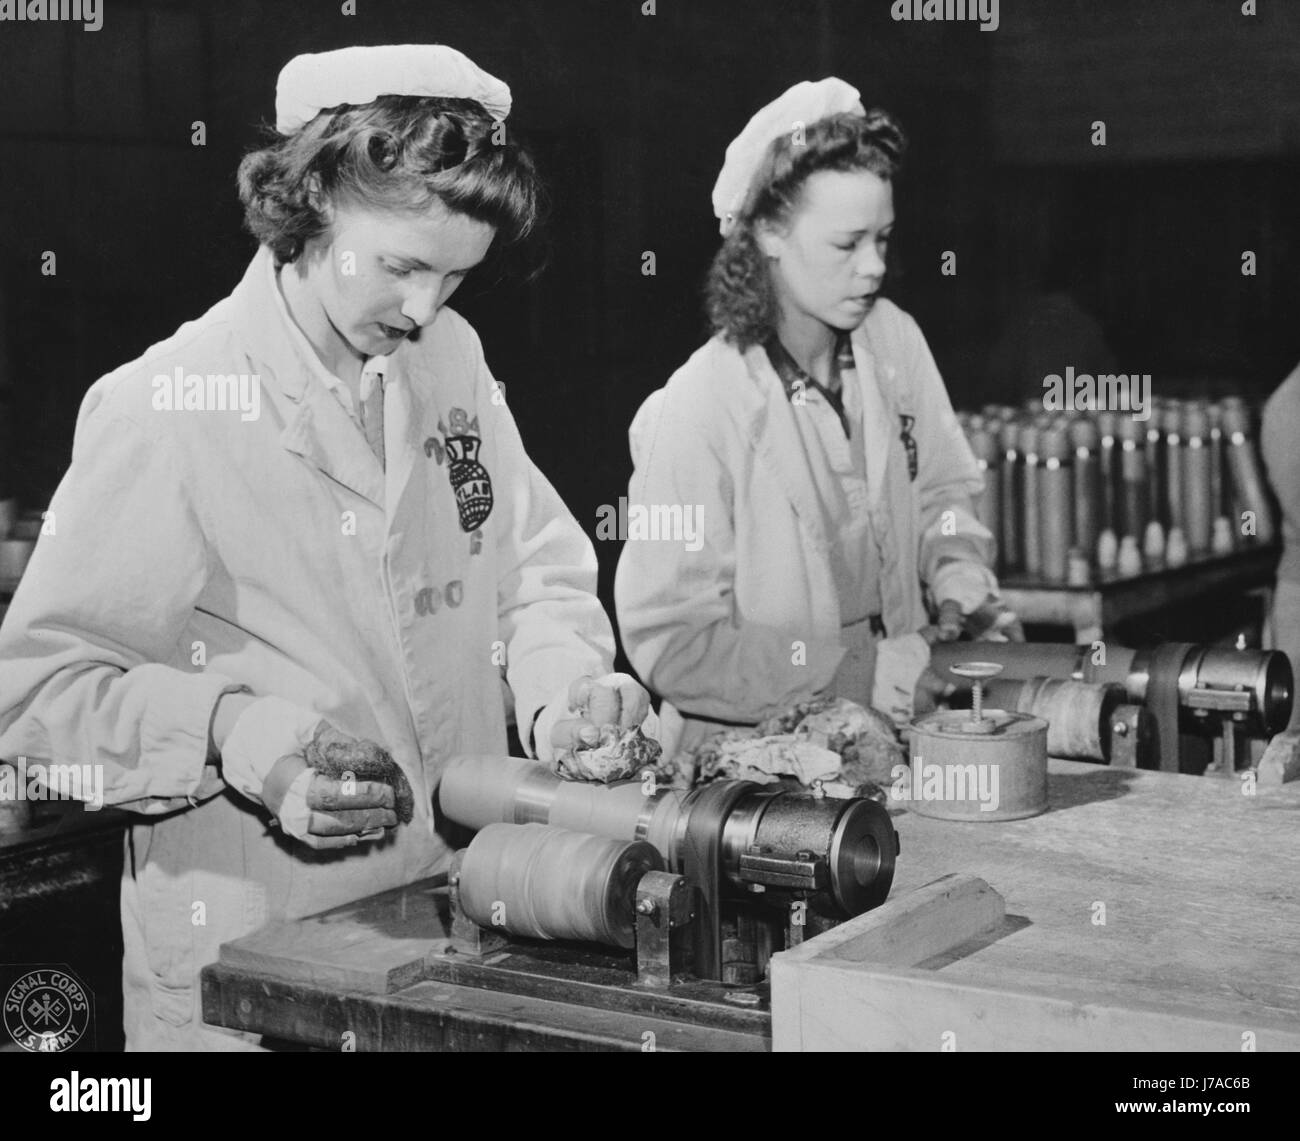 Les femmes sont la suppression de l'excédent de peinture des bandes que l'obus, 1943 Cercle de munitions. Banque D'Images